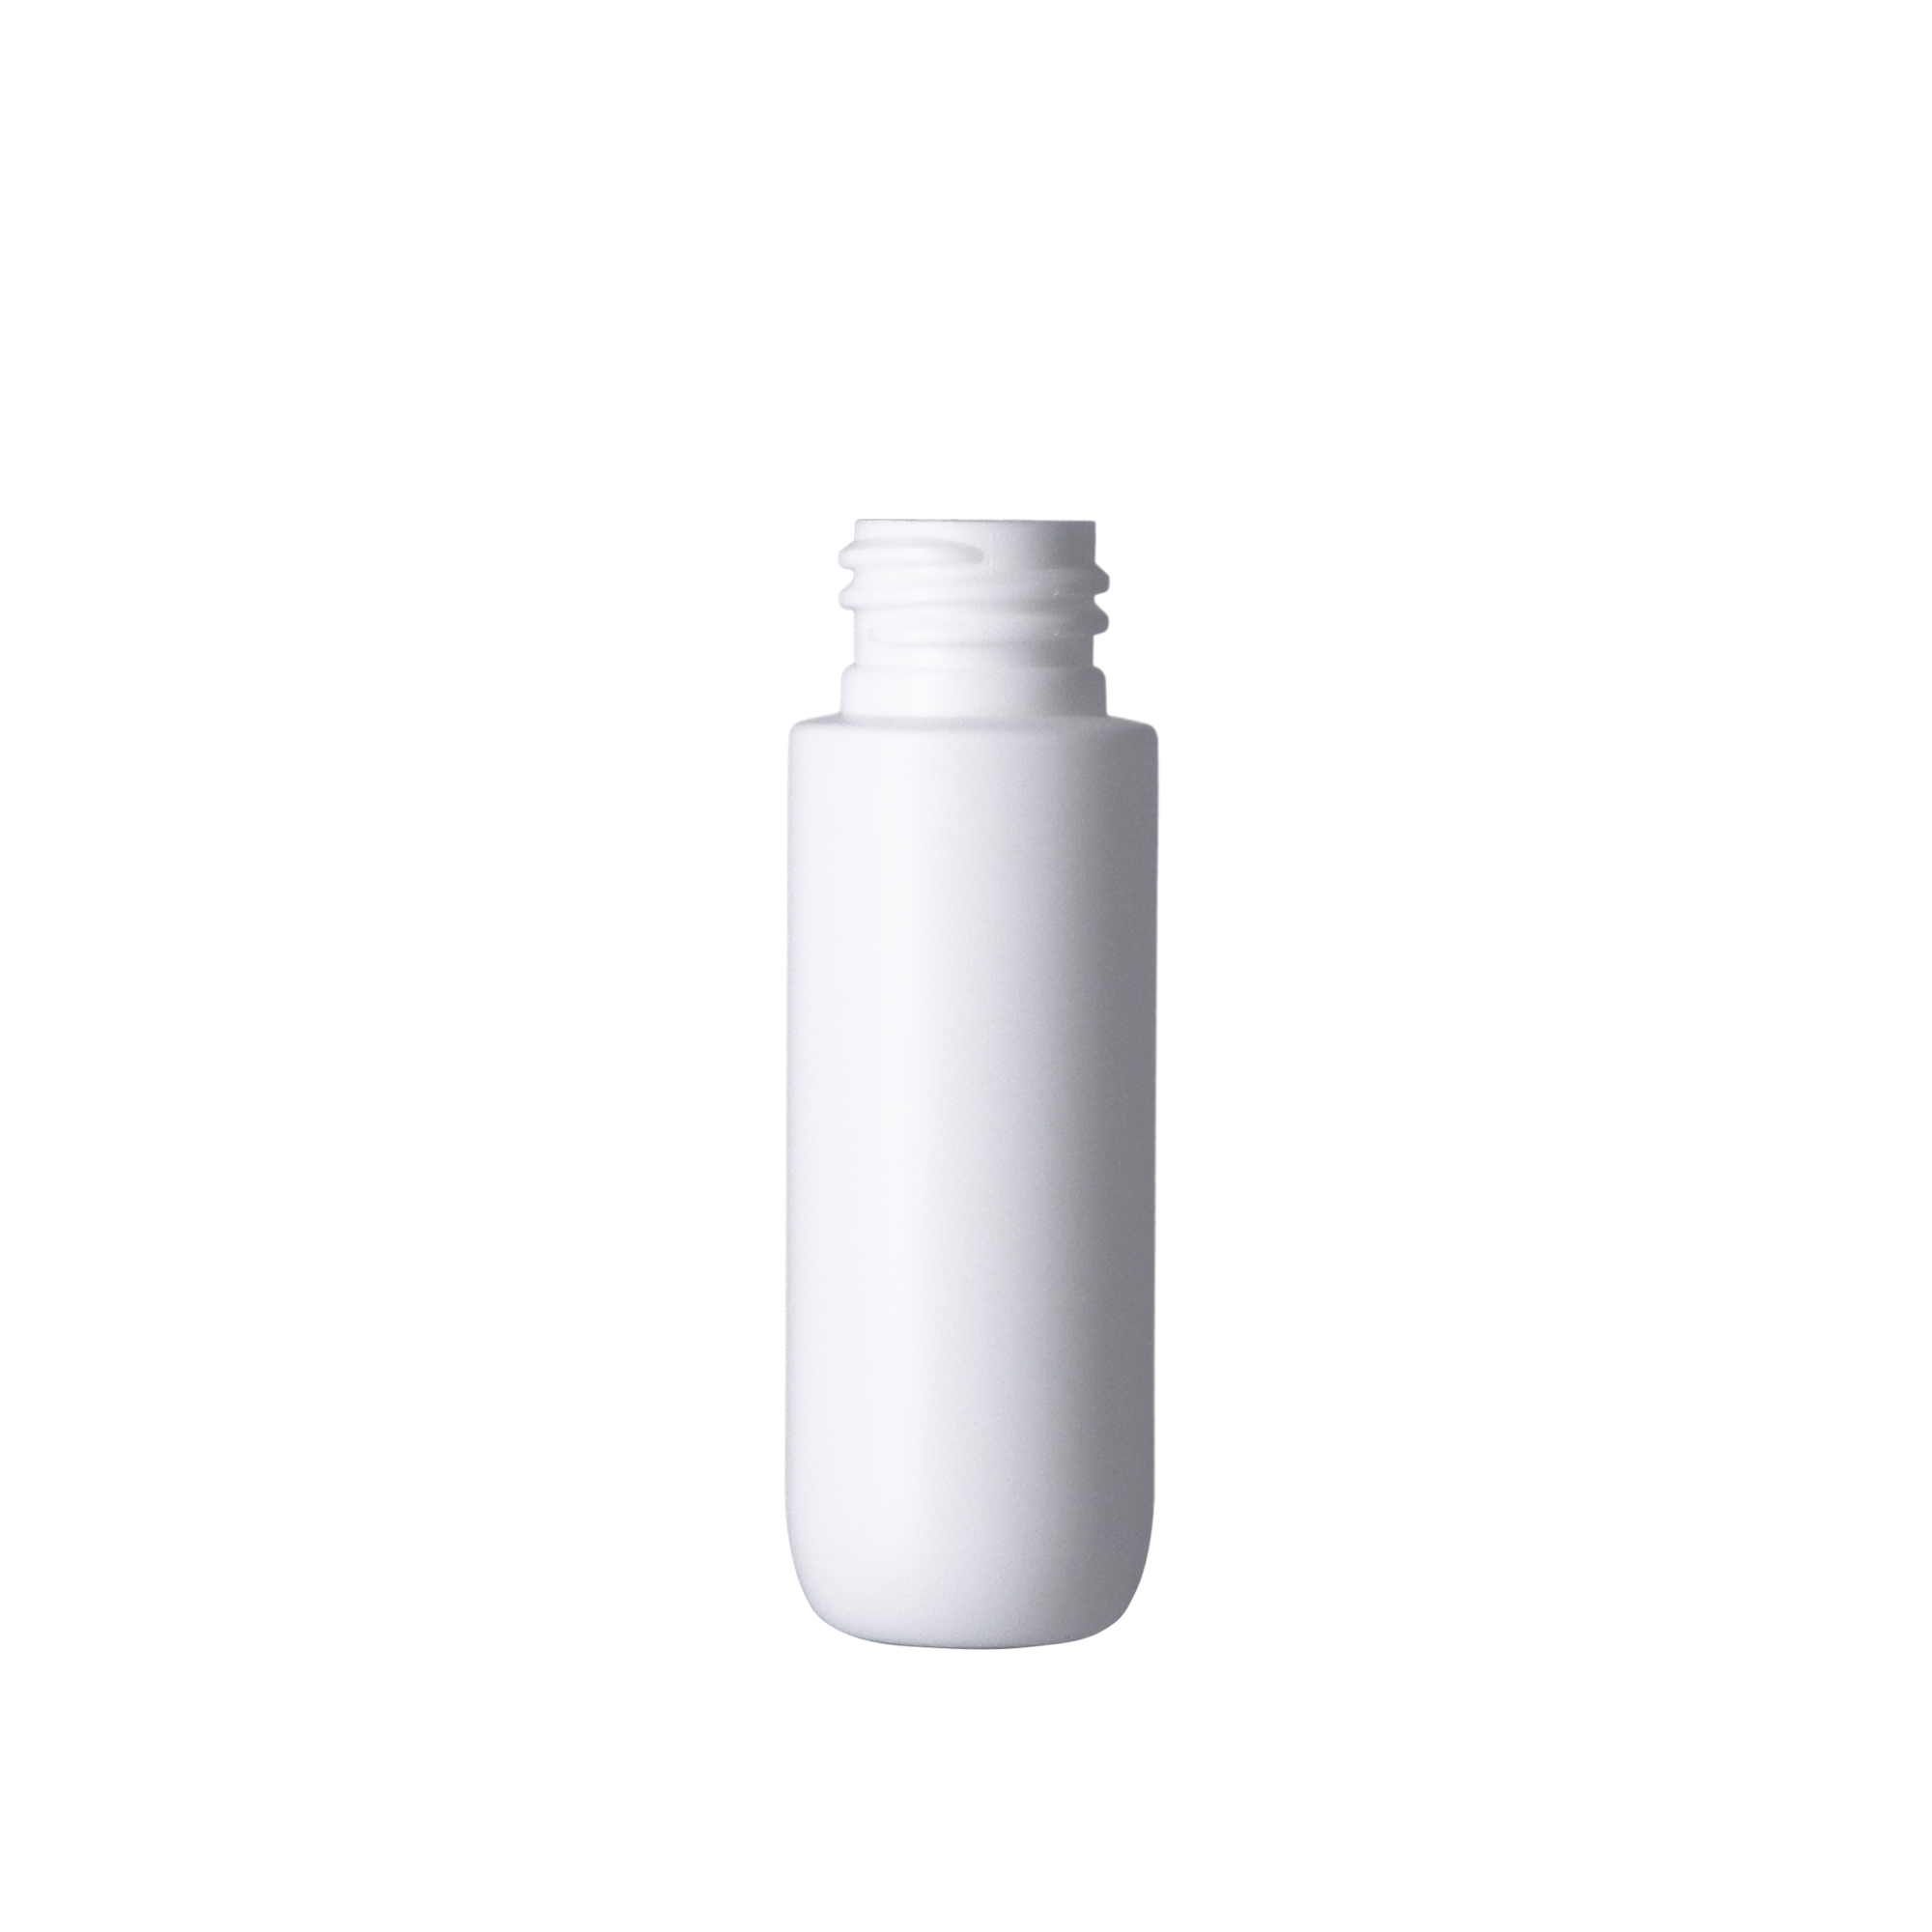 PE瓶,100ml以下,HDPE瓶,PE瓶,旅行組商品,洗髮精,沐浴乳,乳液,PCR